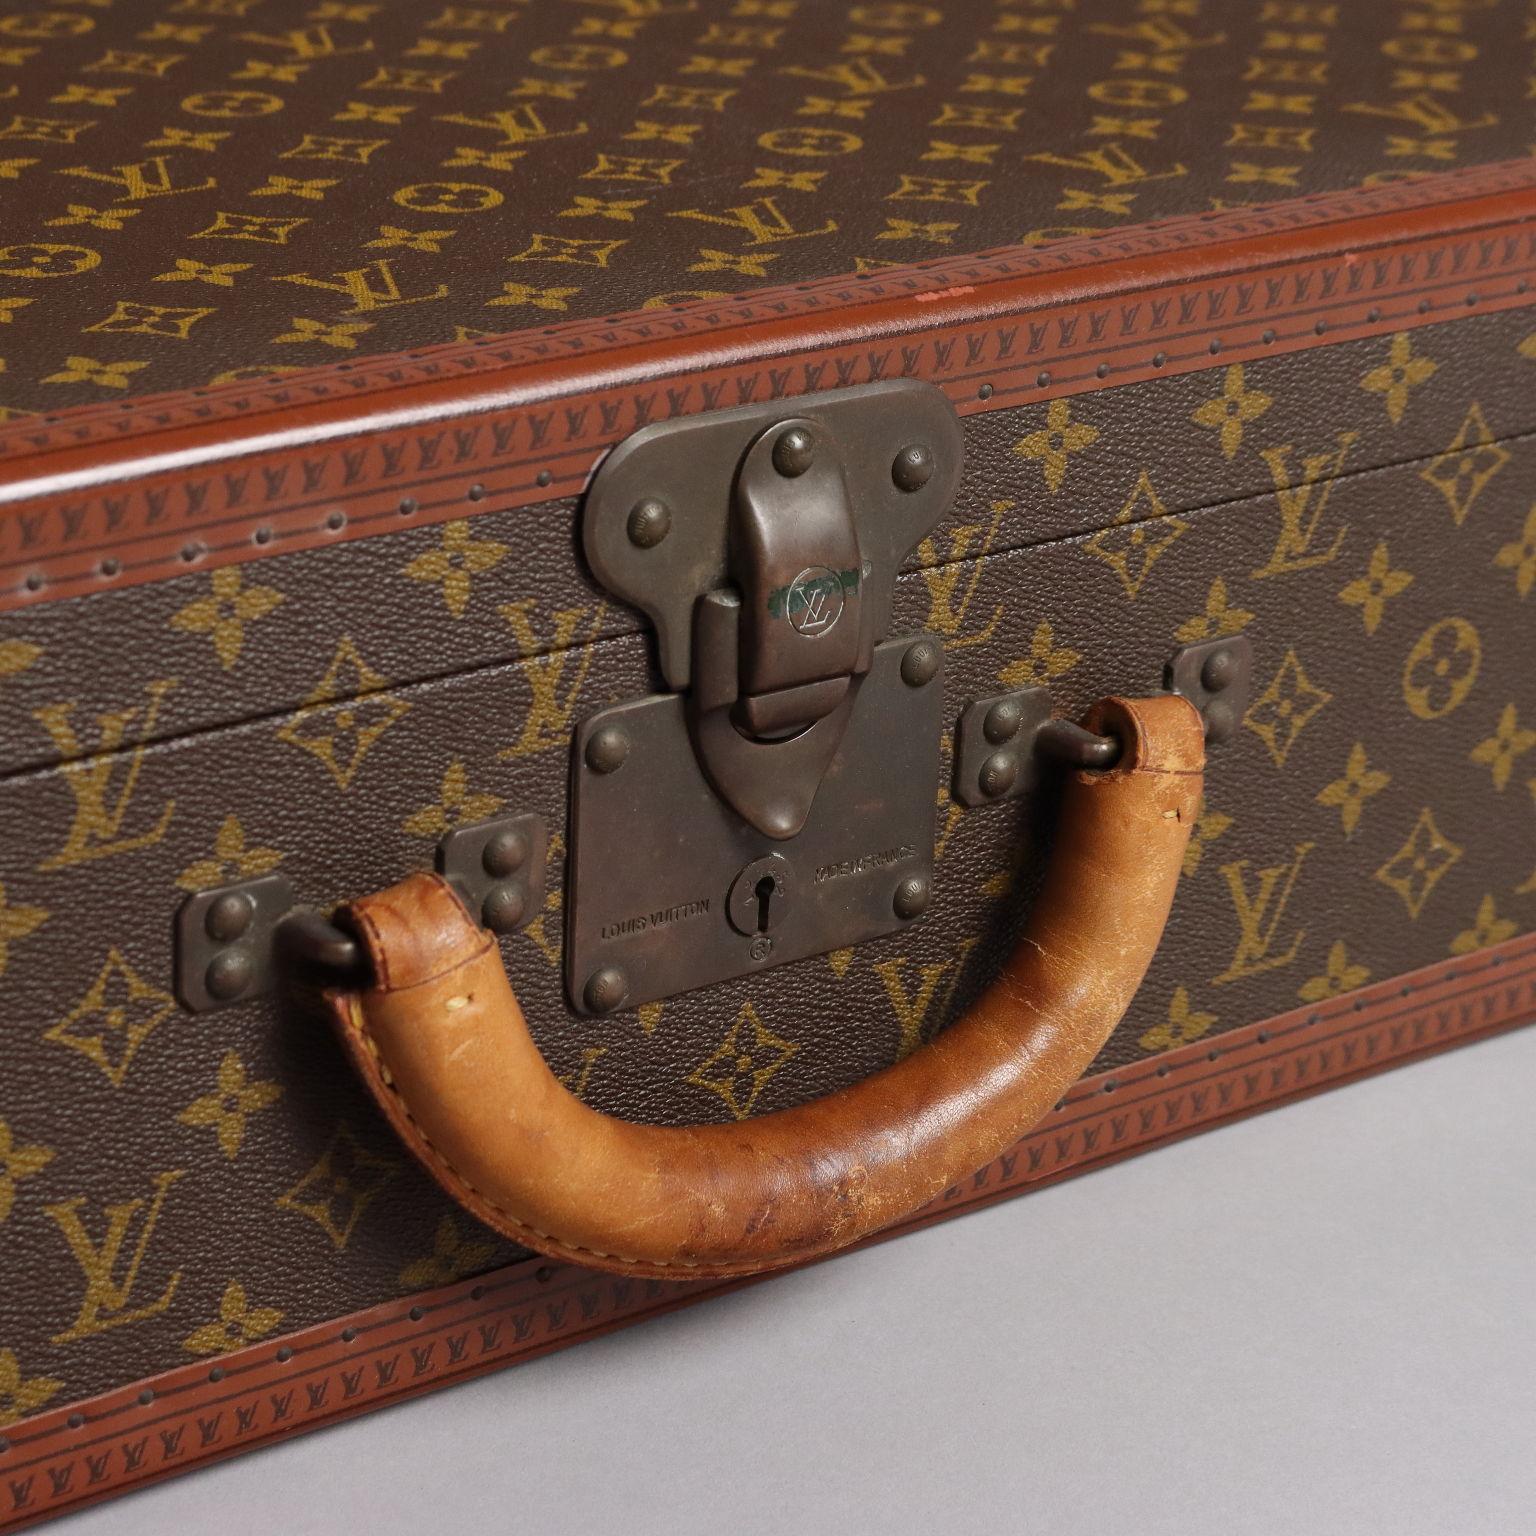 Valise rigide Louis Vuitton modèle Bisten 80 en toile monogramme iconique, datant des années 1970. L'intérieur est doublé et les poignées sont arrondies en cuir ; les coins sont en laiton et les bords en lozine, une fibre volcanique très résistante.